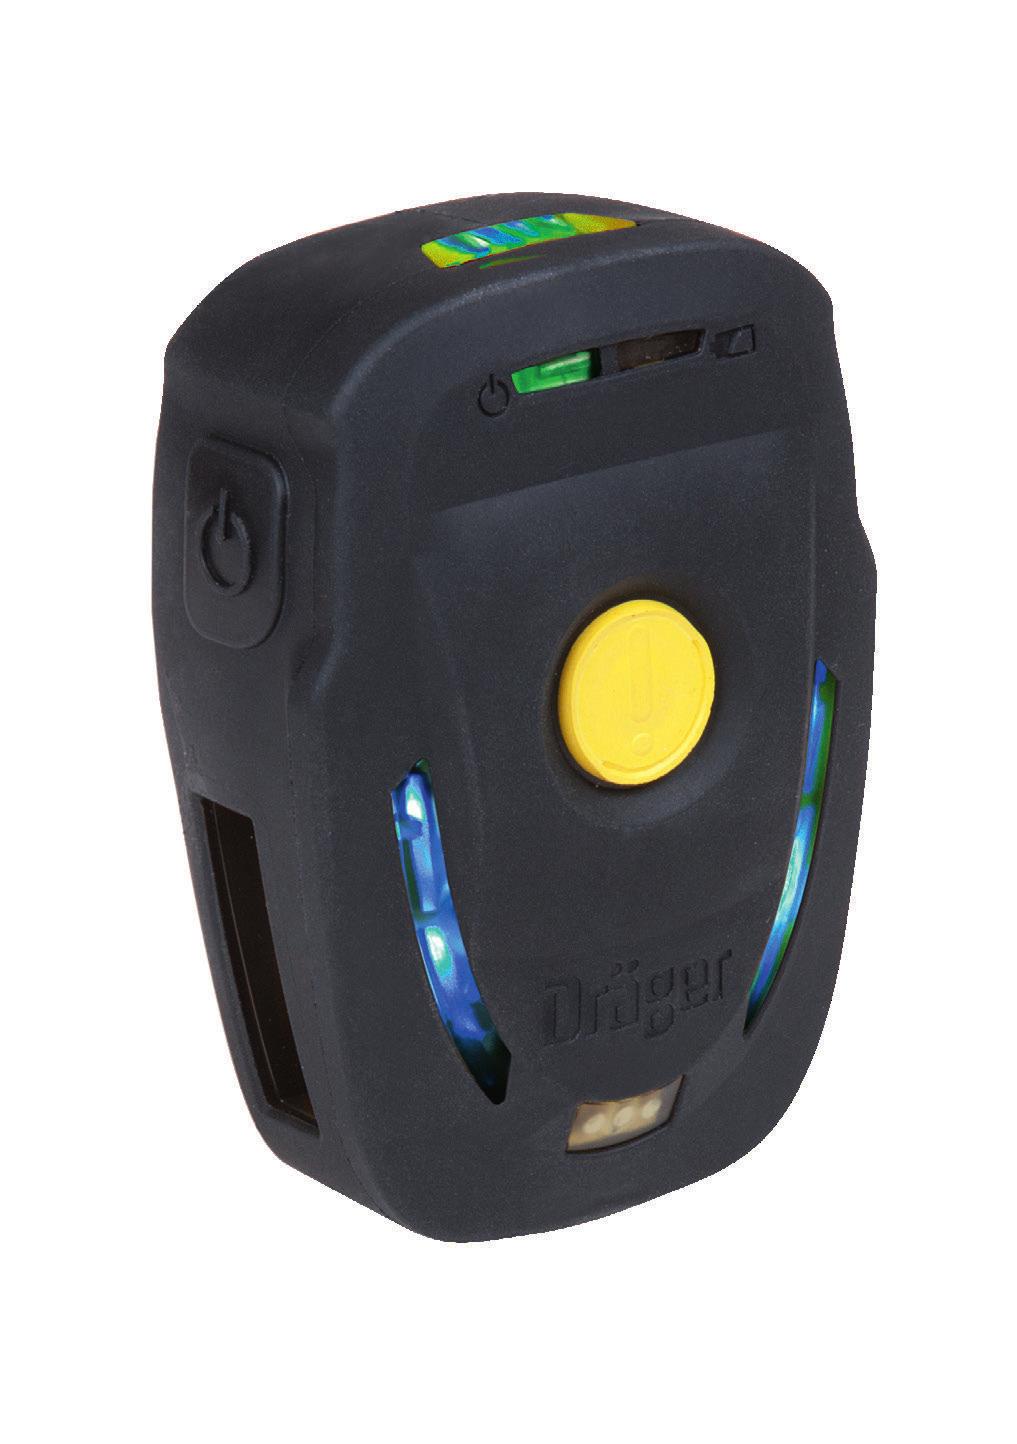 Dräger Bodyguard 1000 Dispositivo de advertência Projetado para proteção à vida ao alertar a equipe quando um usuário ﬁca imóvel ou em apuros, o Dräger Bodyguard 1000 emite sinais e alarmes claros e